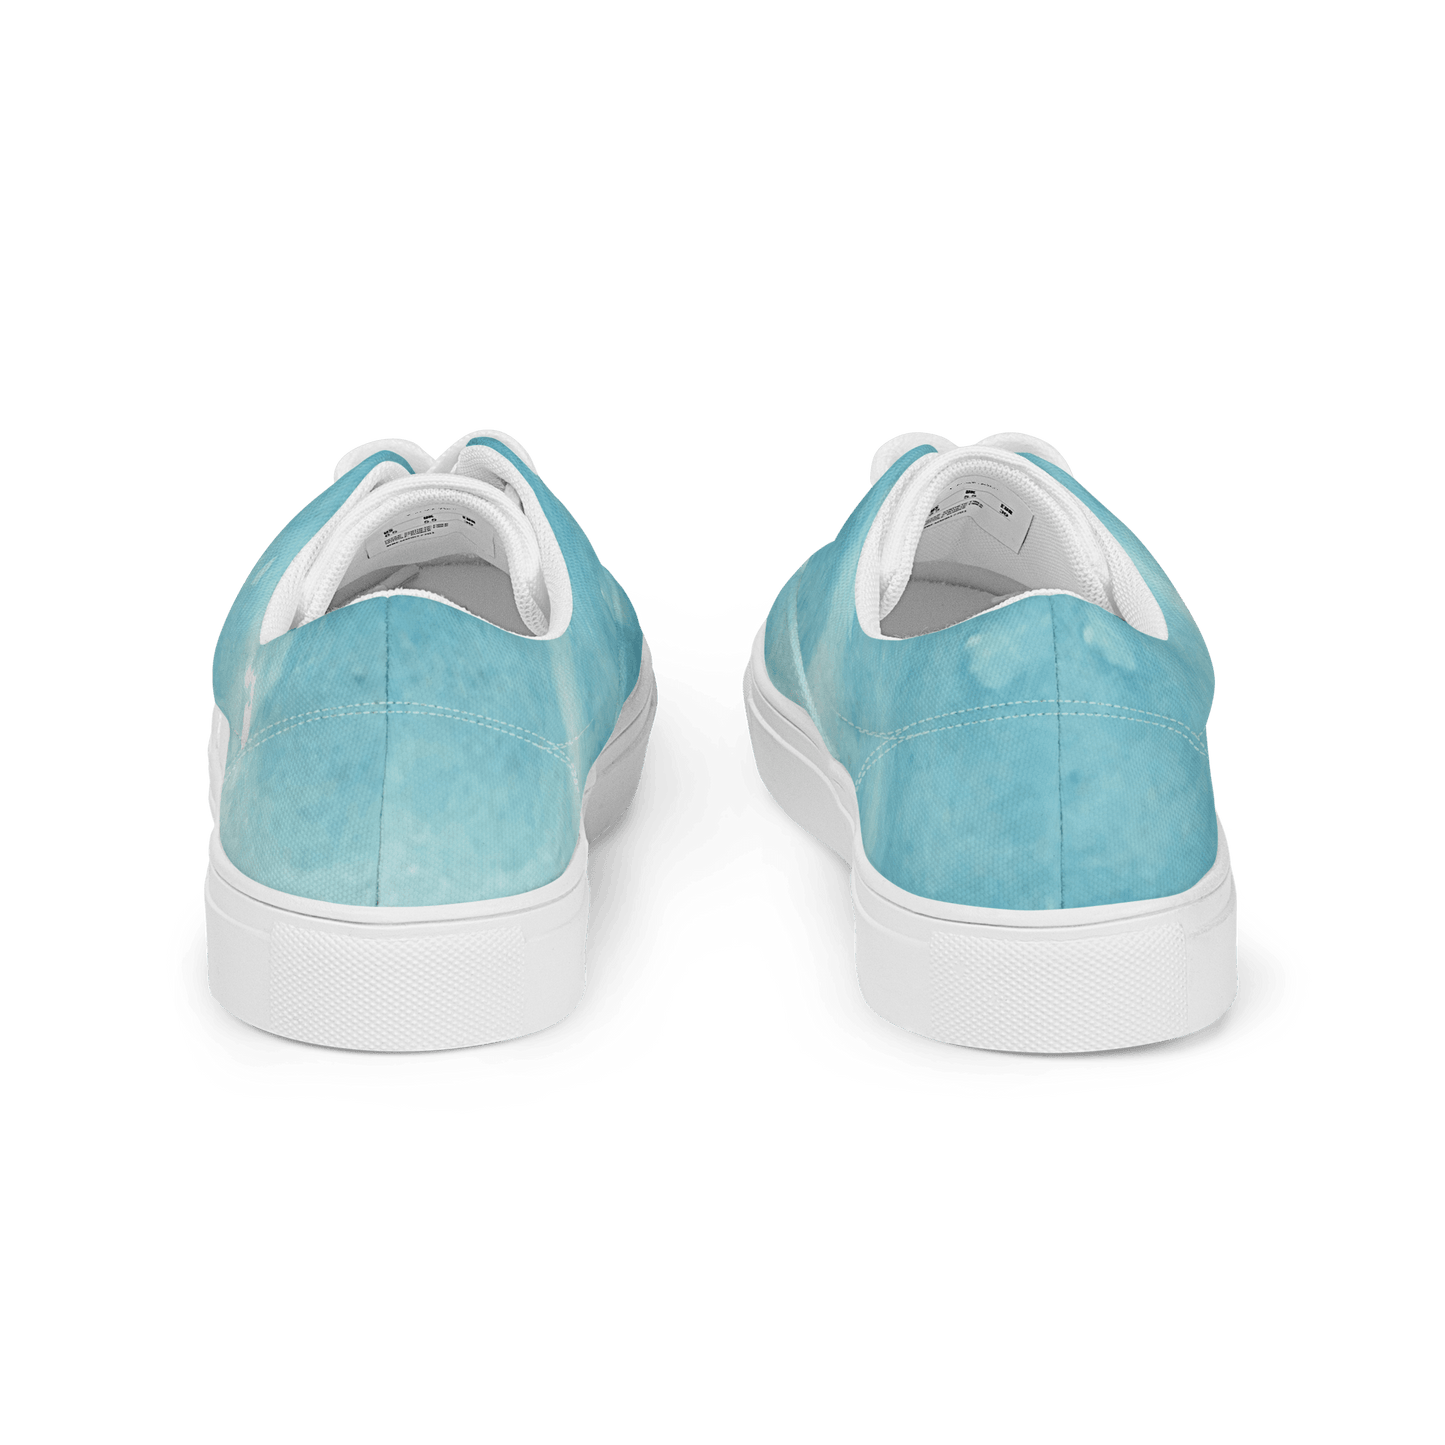 Sky Blue Women’s lace-up canvas shoes